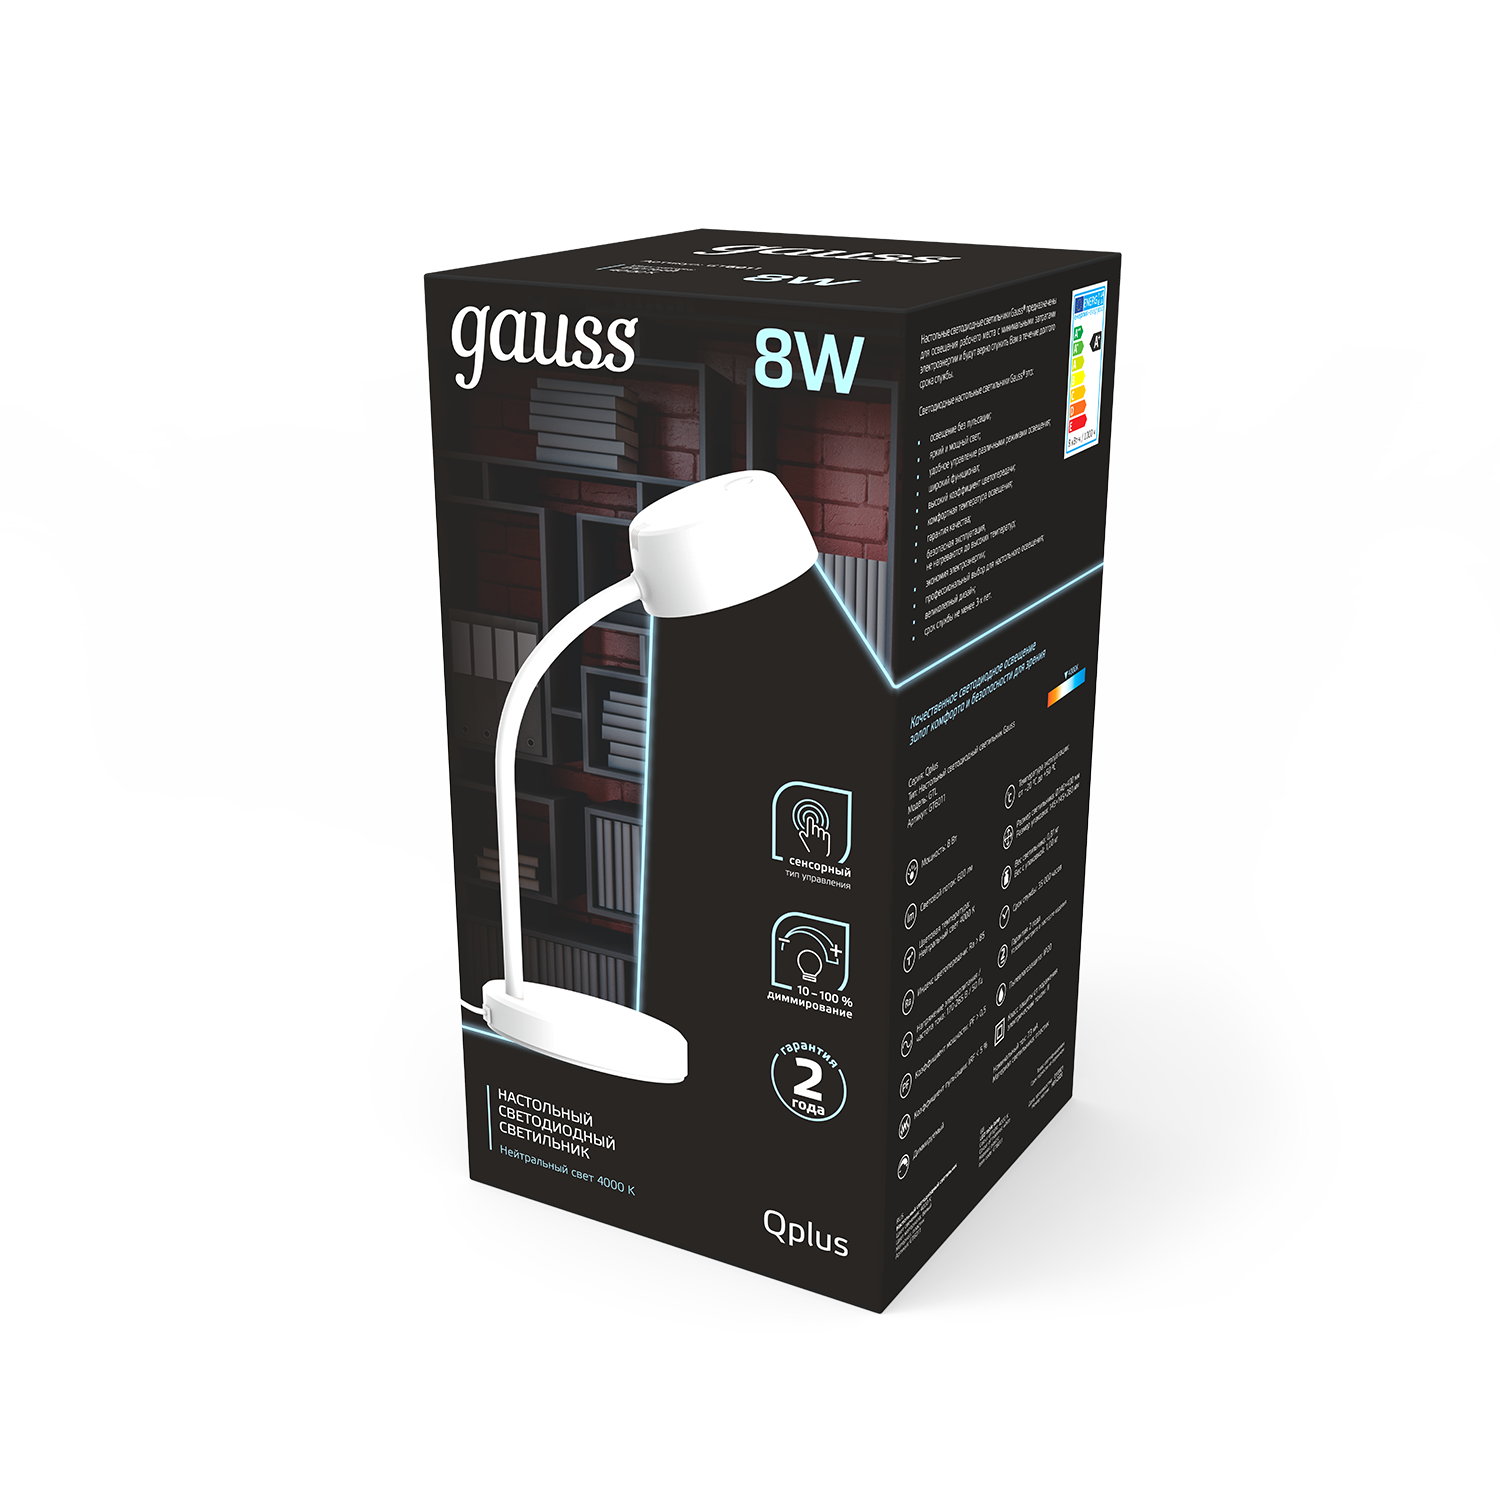 Gauss Светильник настольный Qplus модель GTL601 8W 600lm 4000K 170-265V белый диммируемый LED 1/8